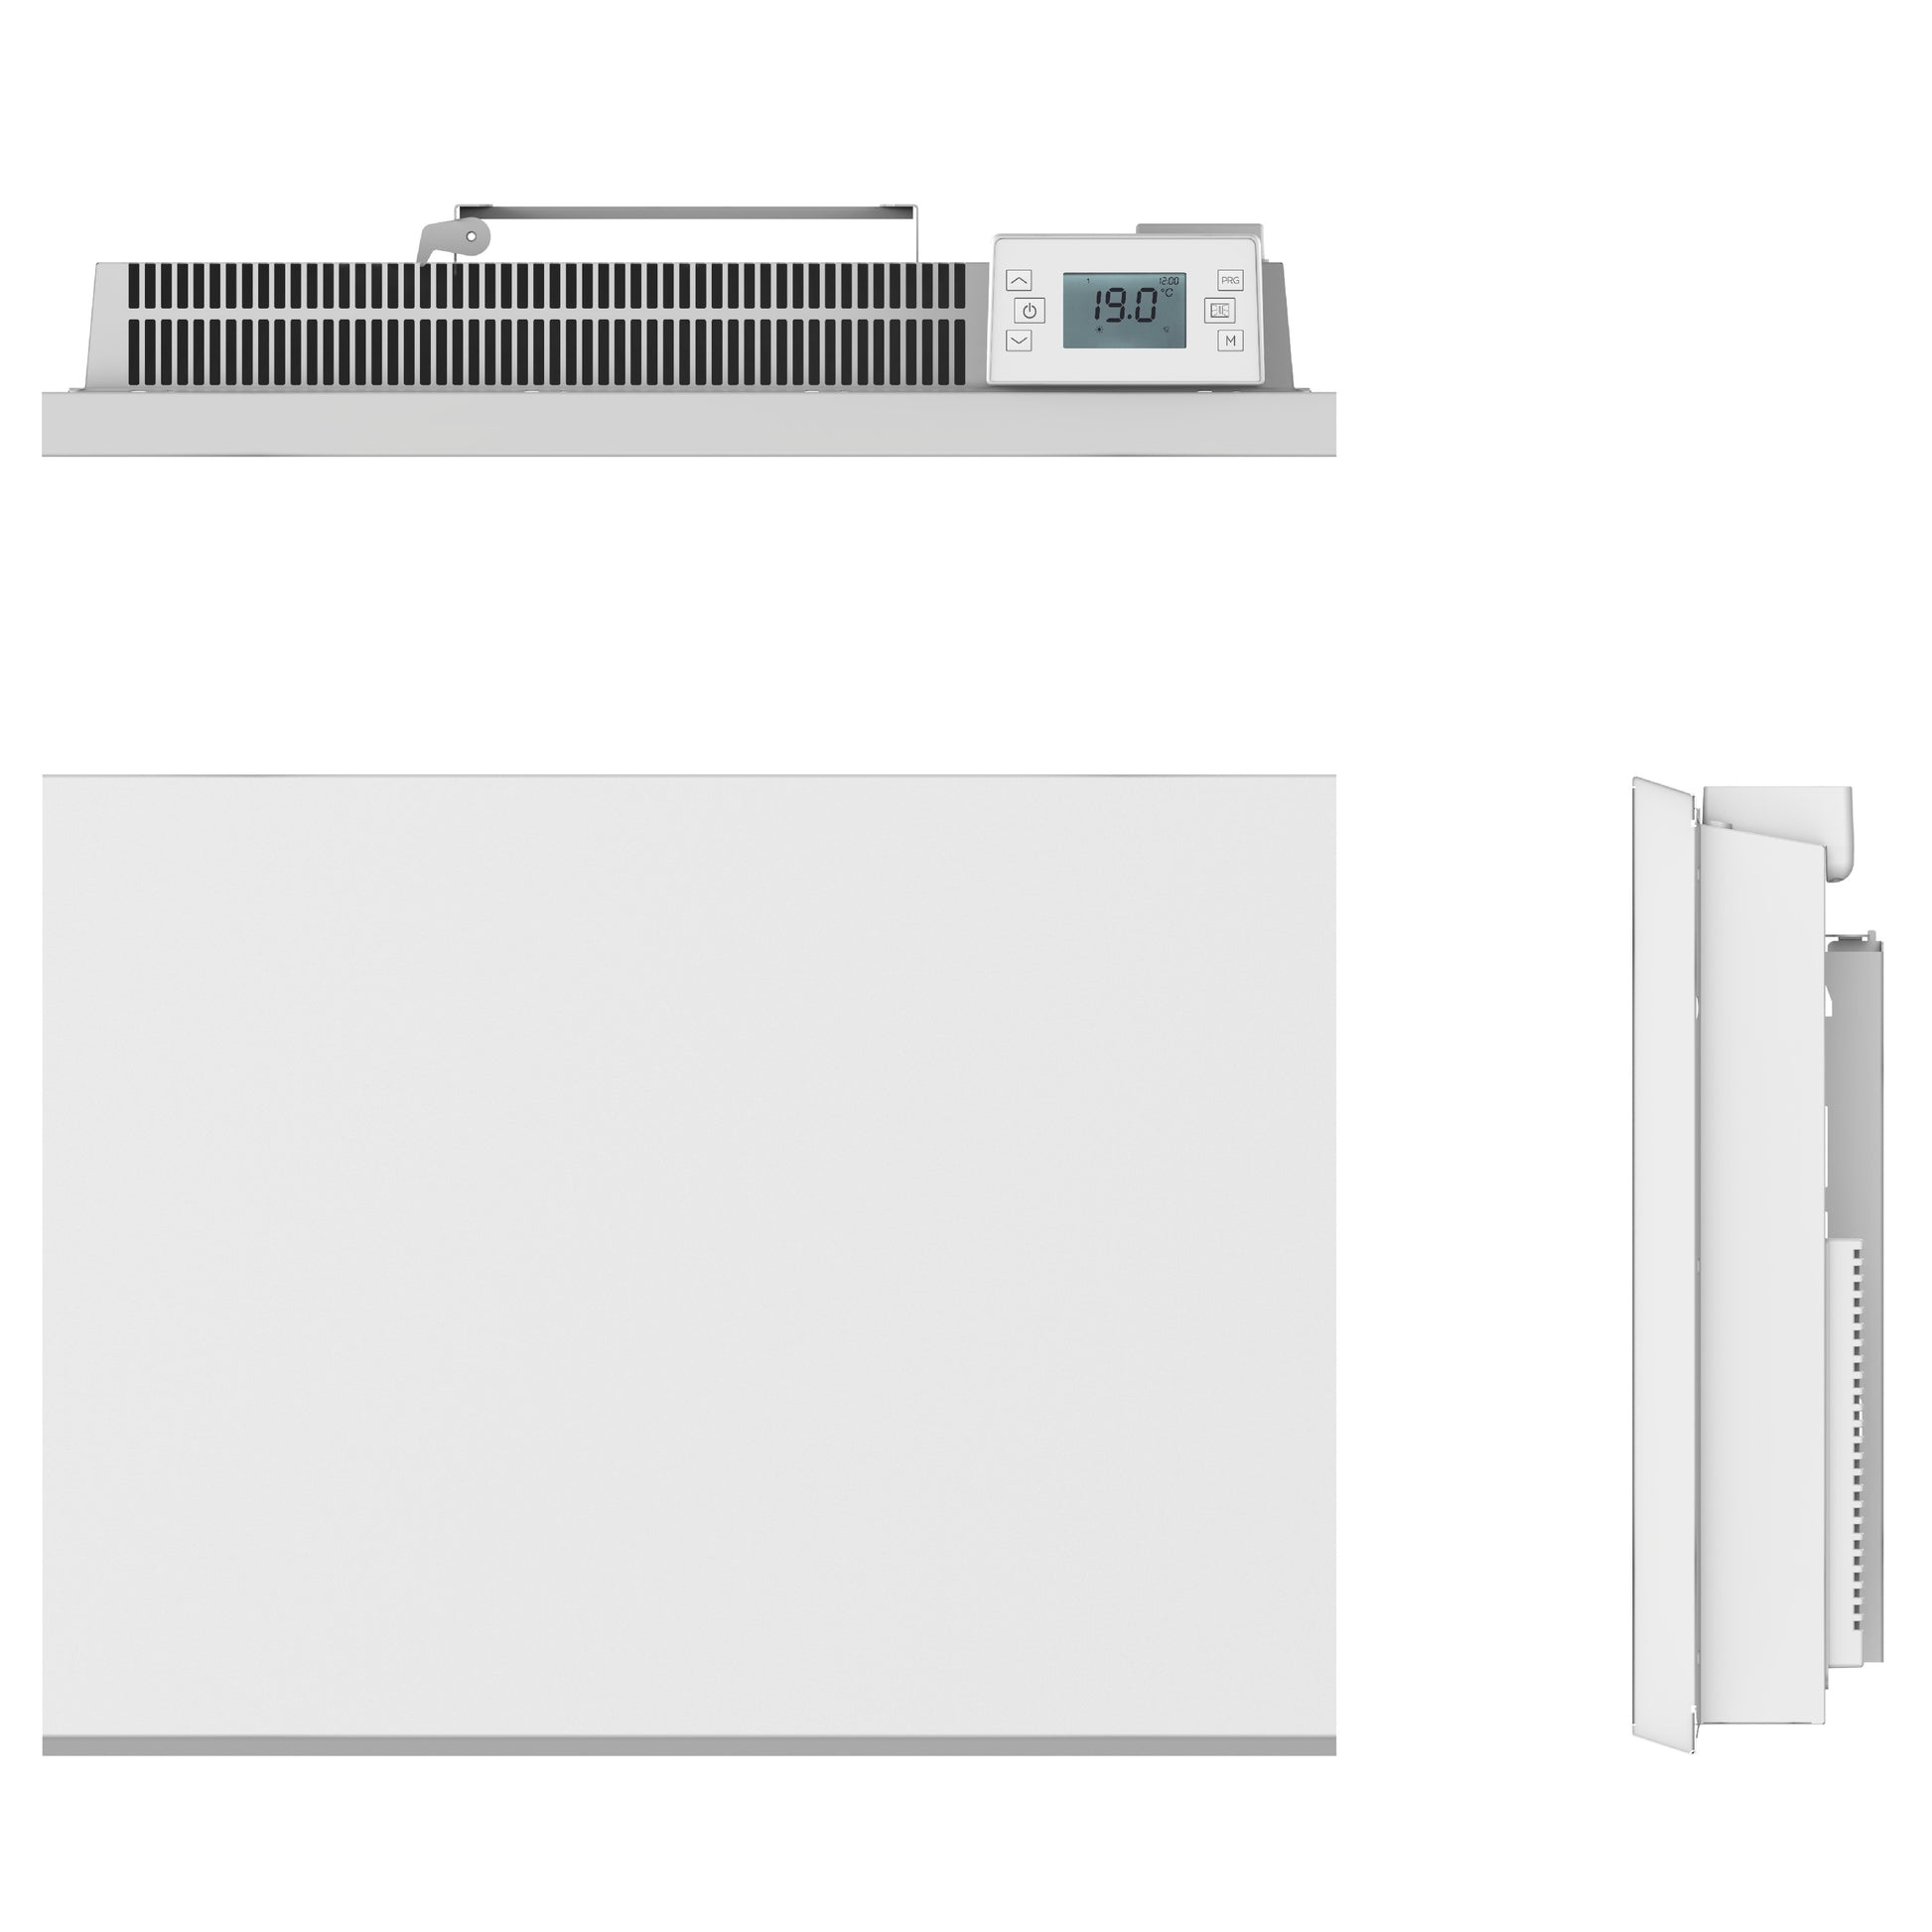 Kalia Radiateur électrique à inertie sèche CERAMIQUE écran LCD 1500W POWELL  Norme NF blanc 82x9xh50cm